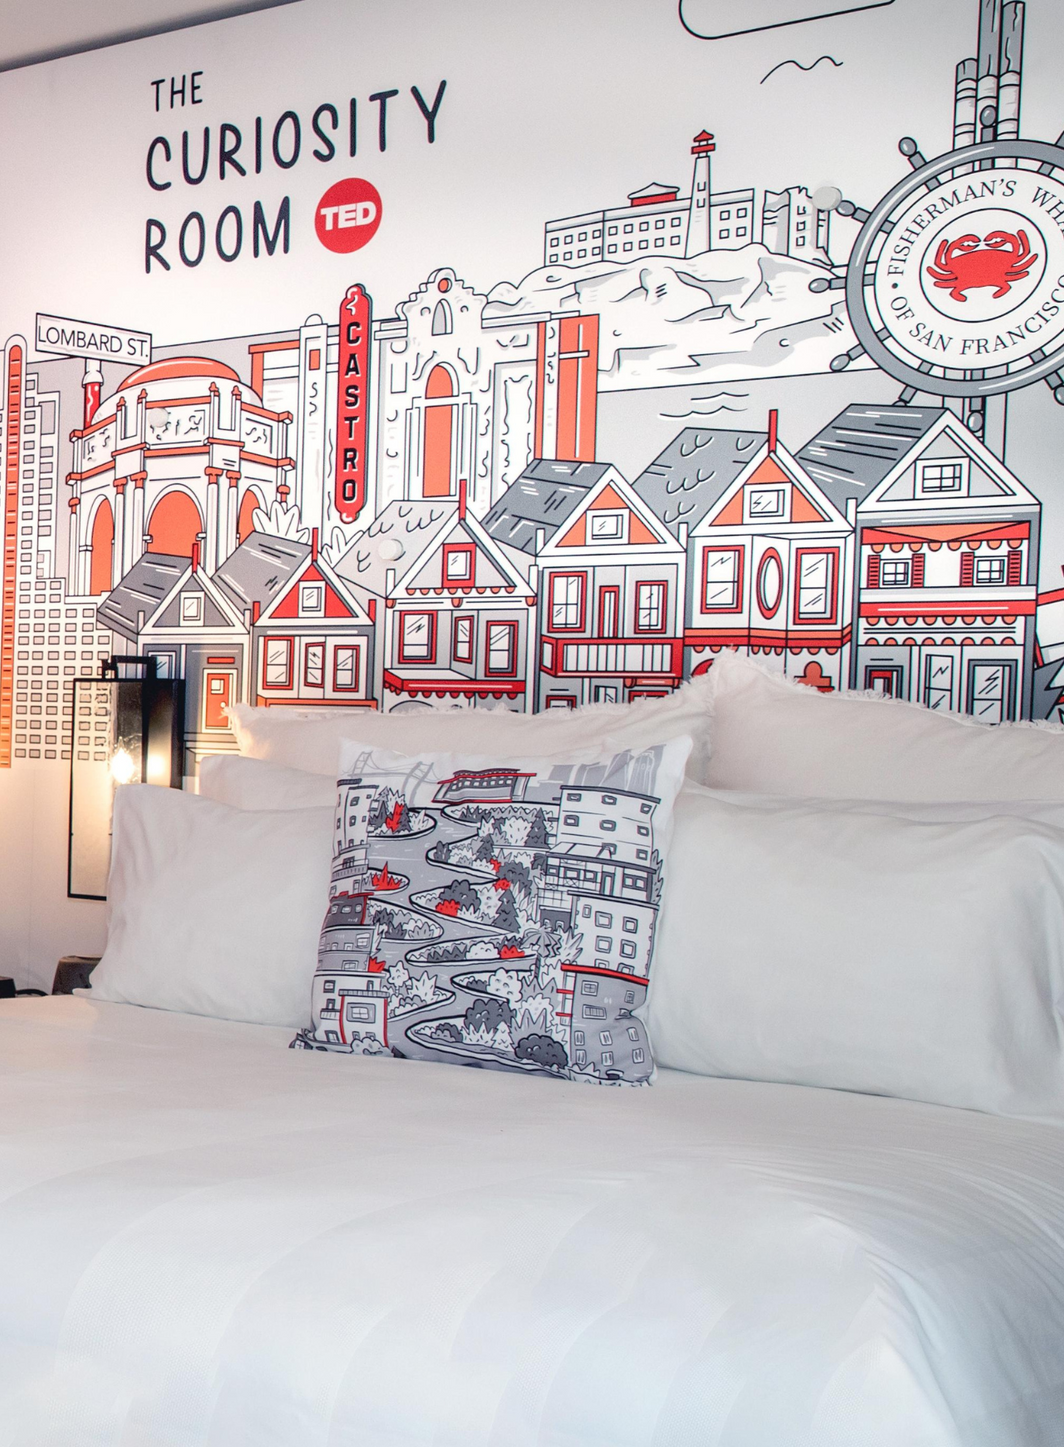 Marriott Hotels surfe sur la tendance des chambres thématiques et expérientielles.